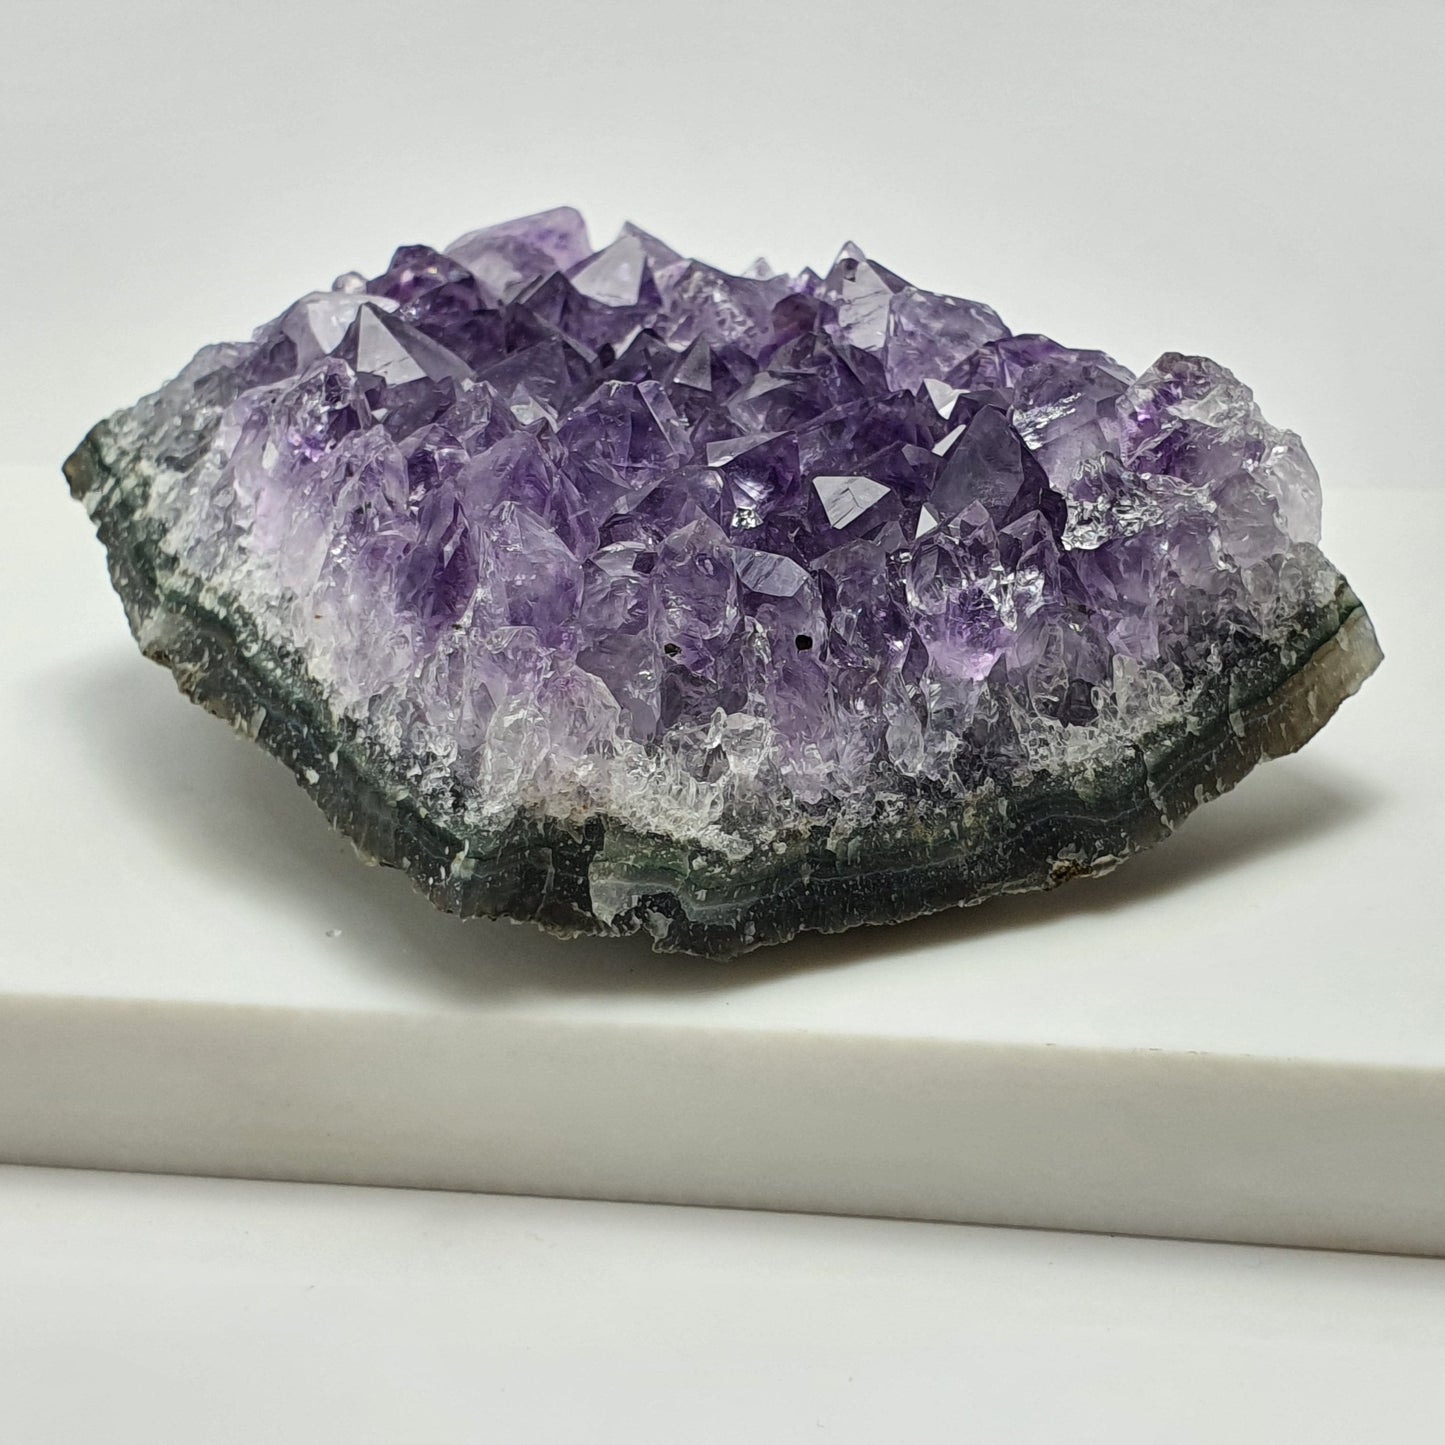 High quality Uruguay Amethyst Cluster 144g | Gemstone, Crystal, Crystal Healing